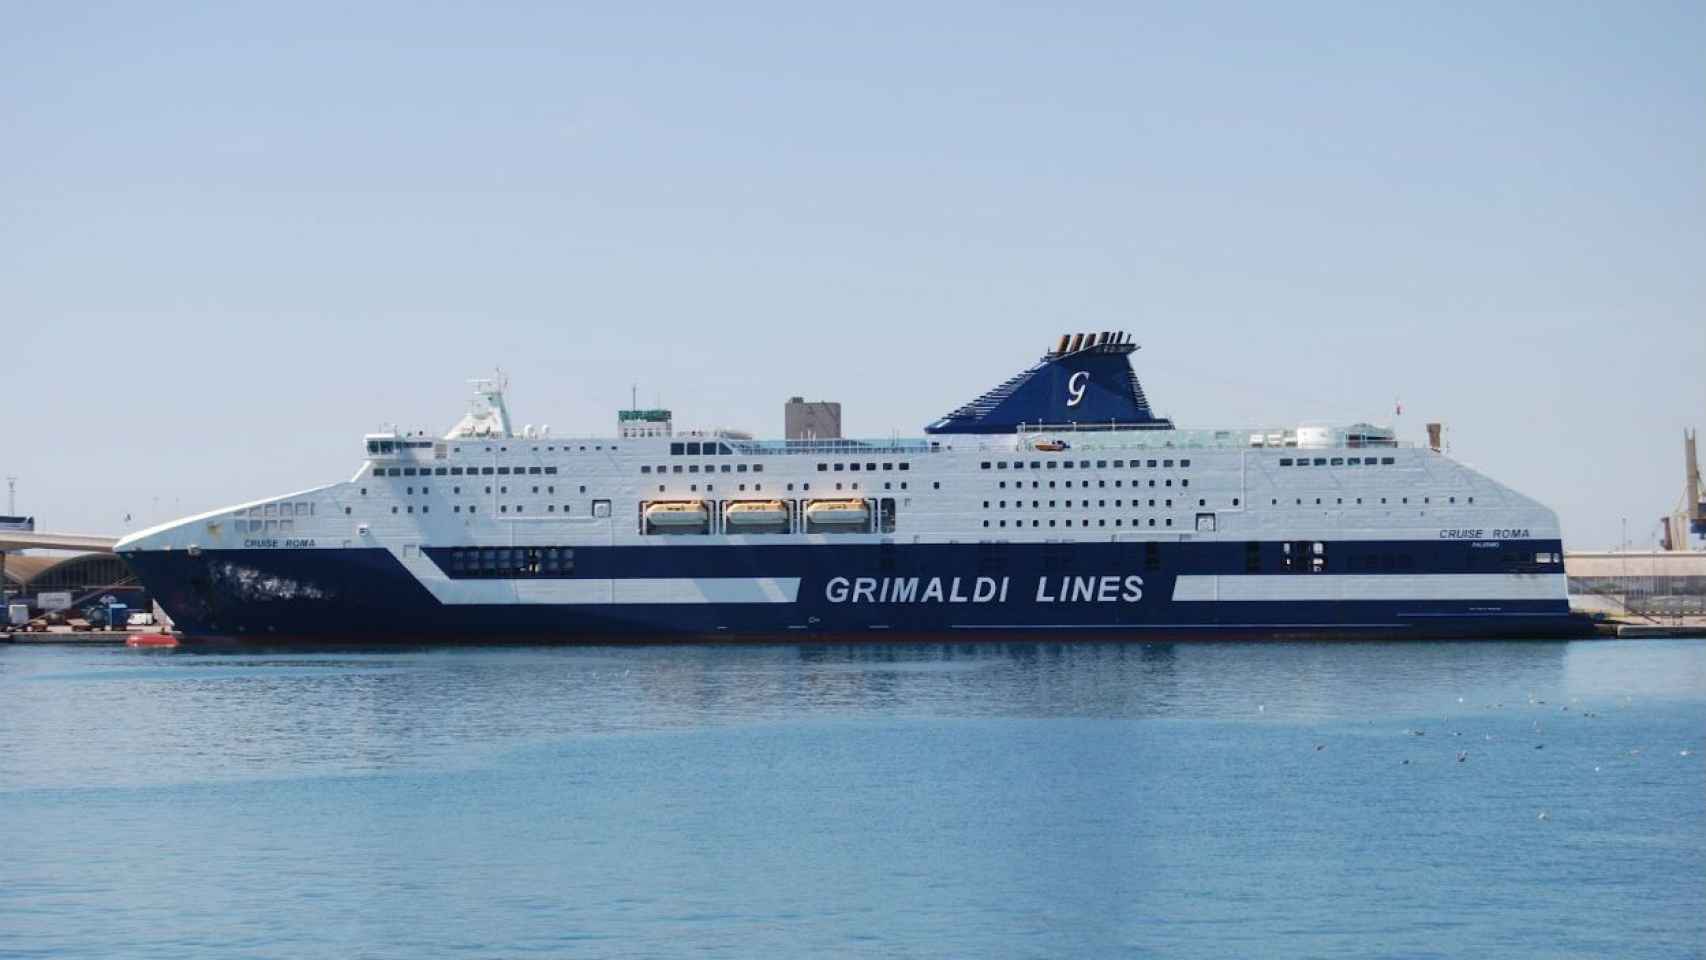 El 'Cruise Roma' es uno de los dos barcos gemelos que cubren la ruta Barcelona-Civitavecchia. Desde él cayó el ciudadano francés desaparecido frente a la costa de Palamós / Grimaldi